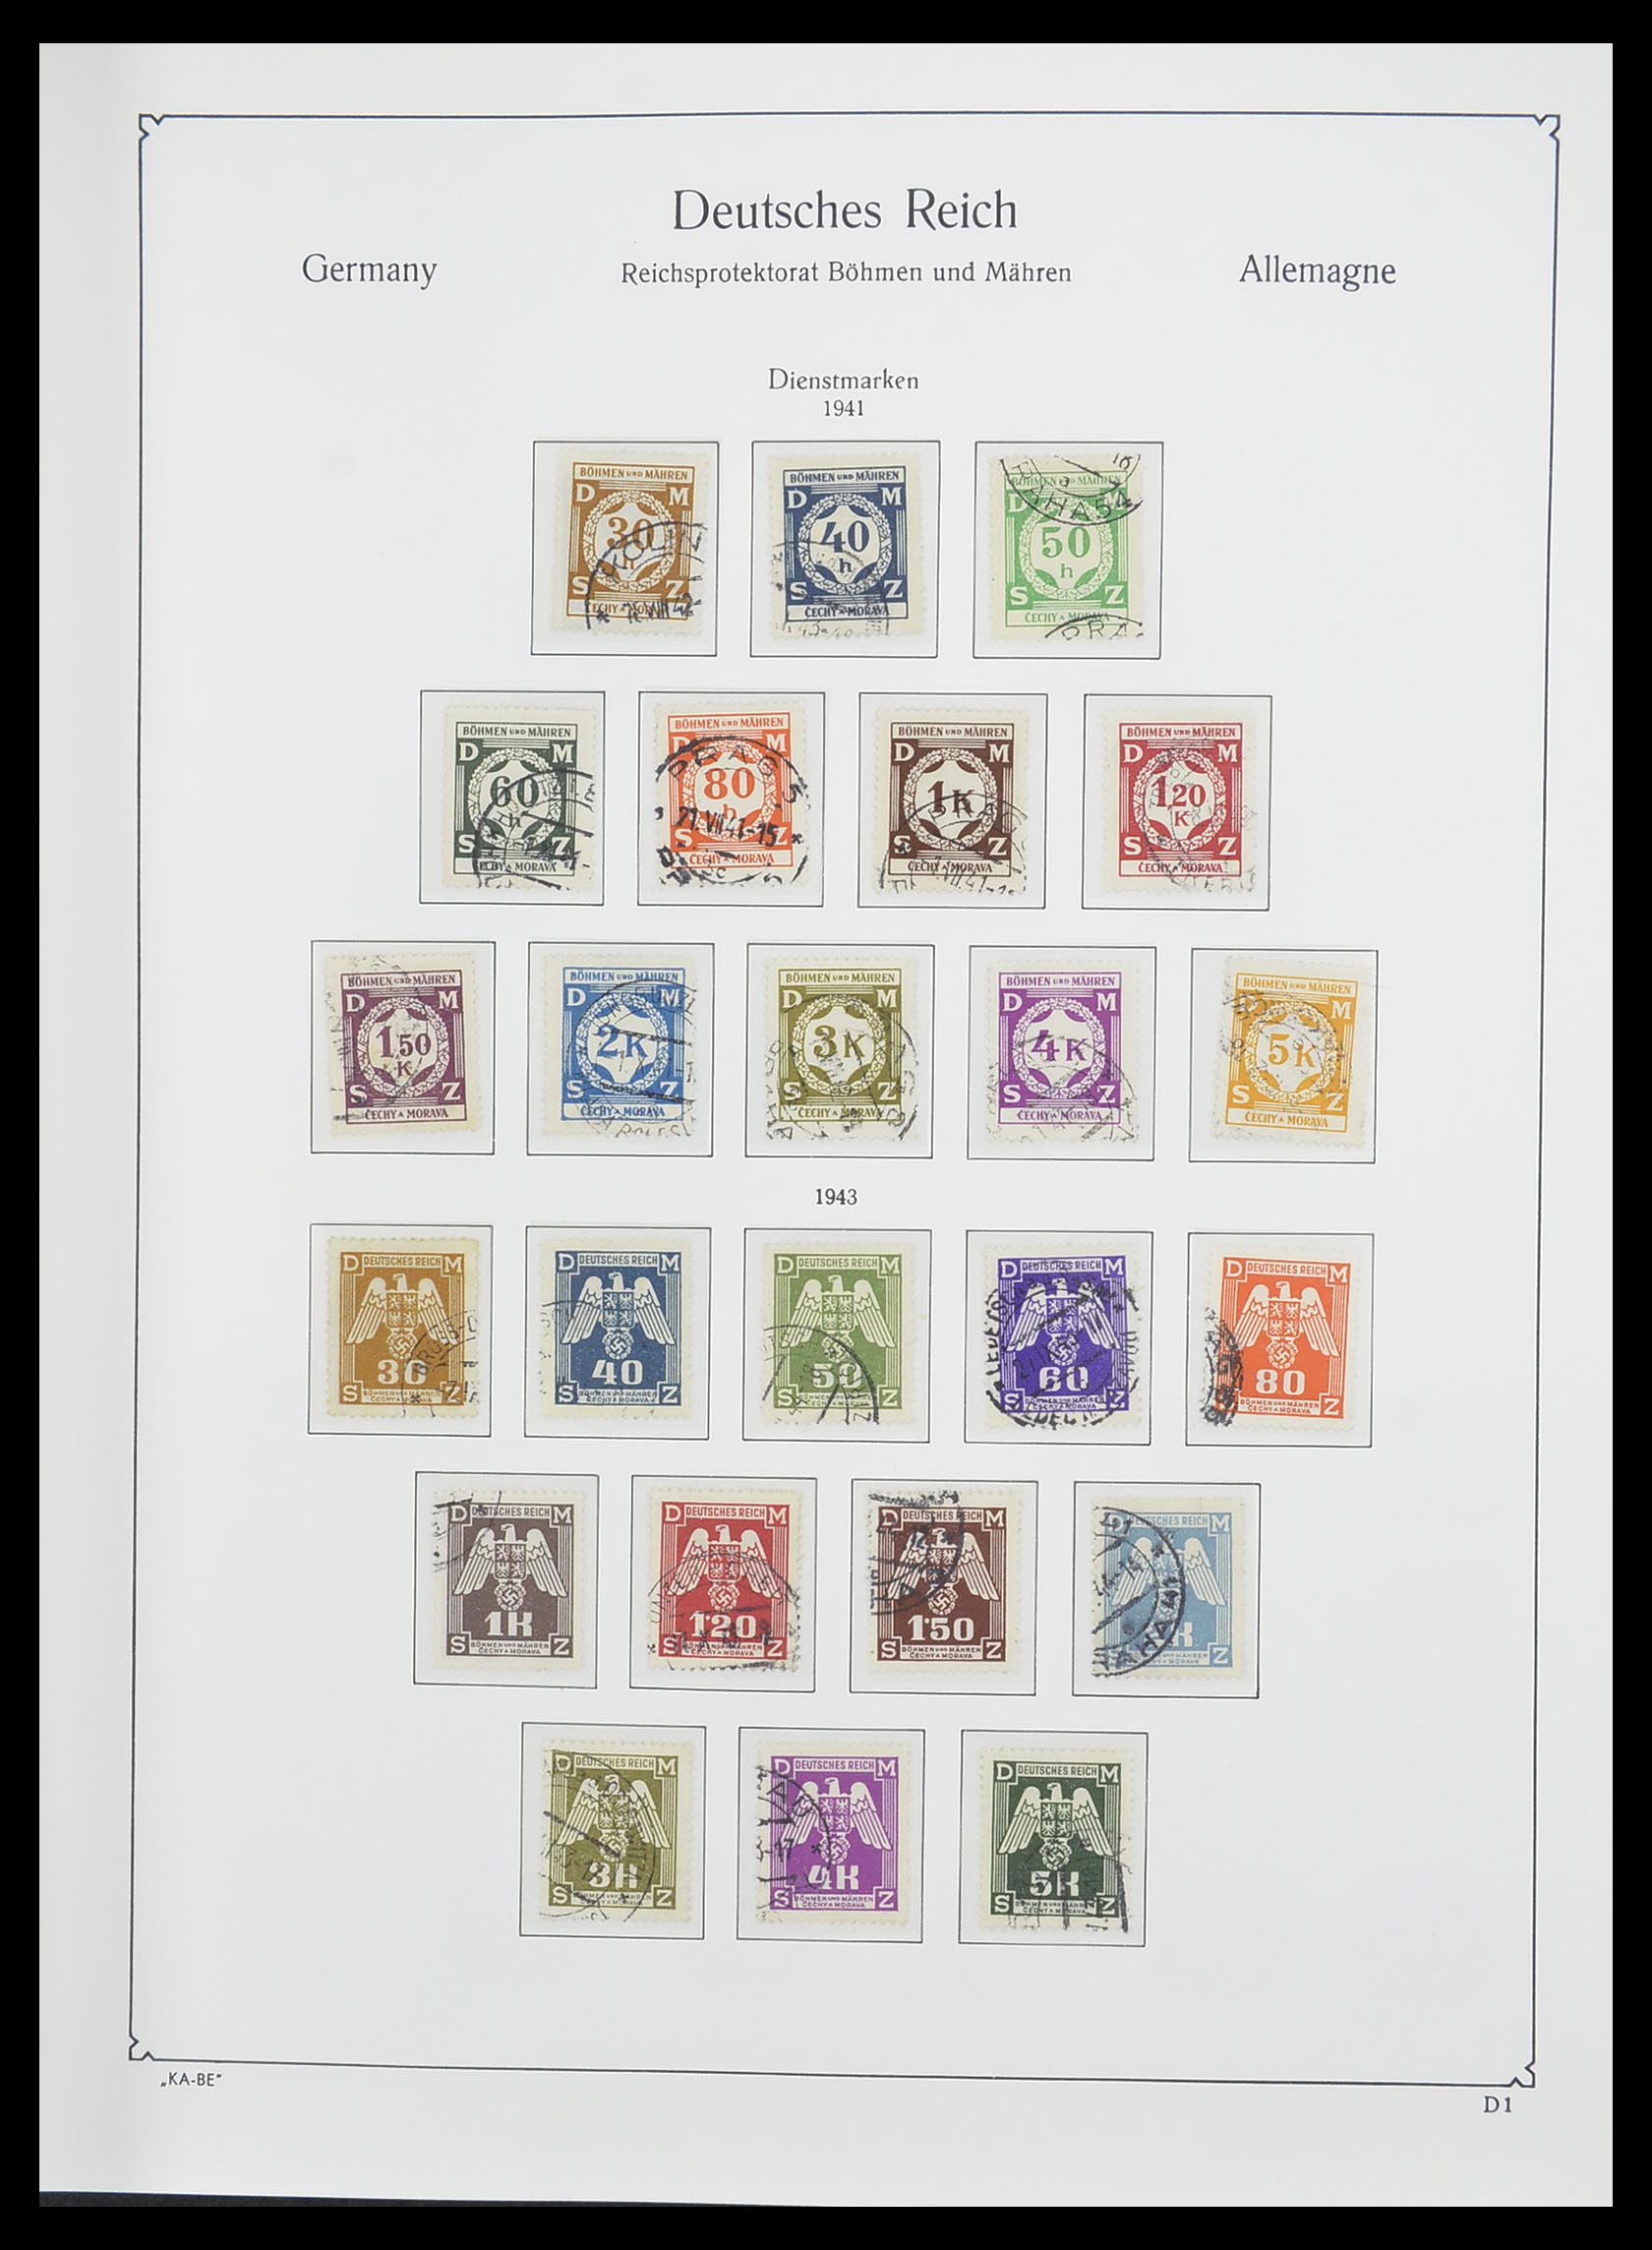 33360 018 - Stamp collection 33360 German occupation 2nd world war 1939-1945.